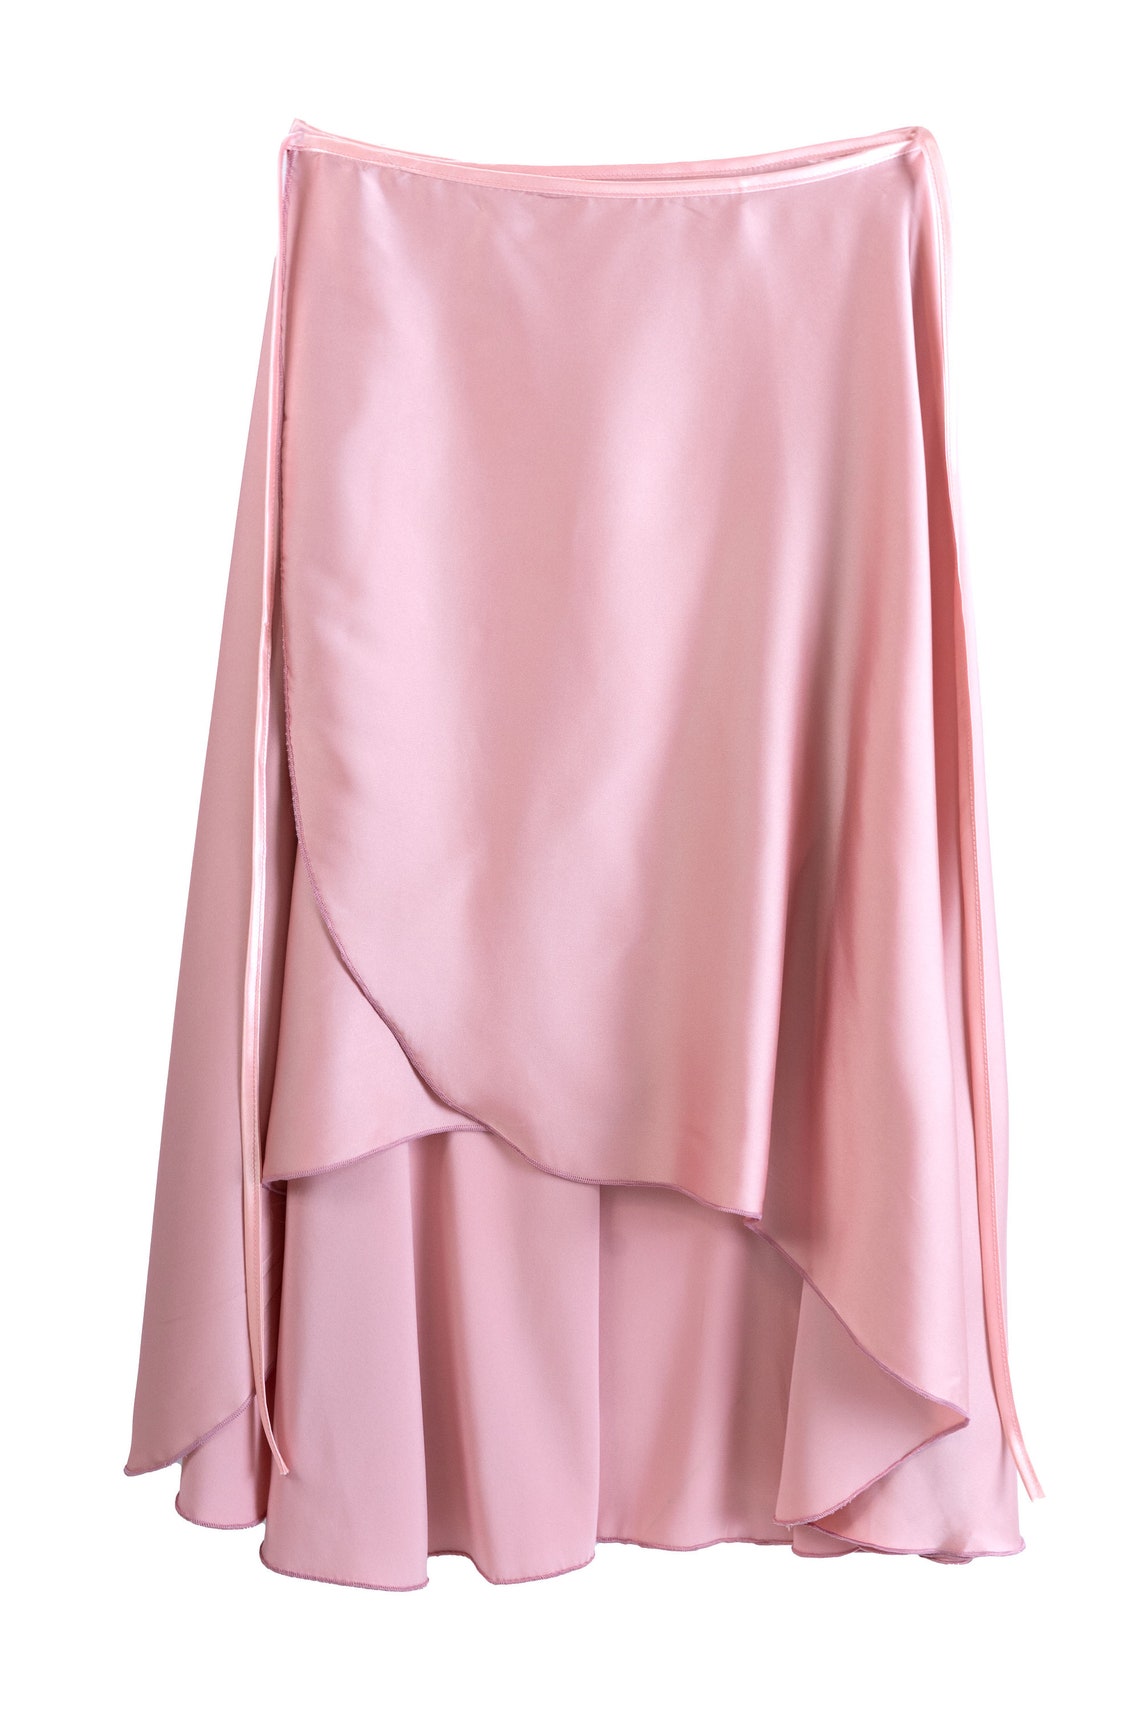 Ballet skirt powder pink ballet skirt wrap ballet skirt | Etsy